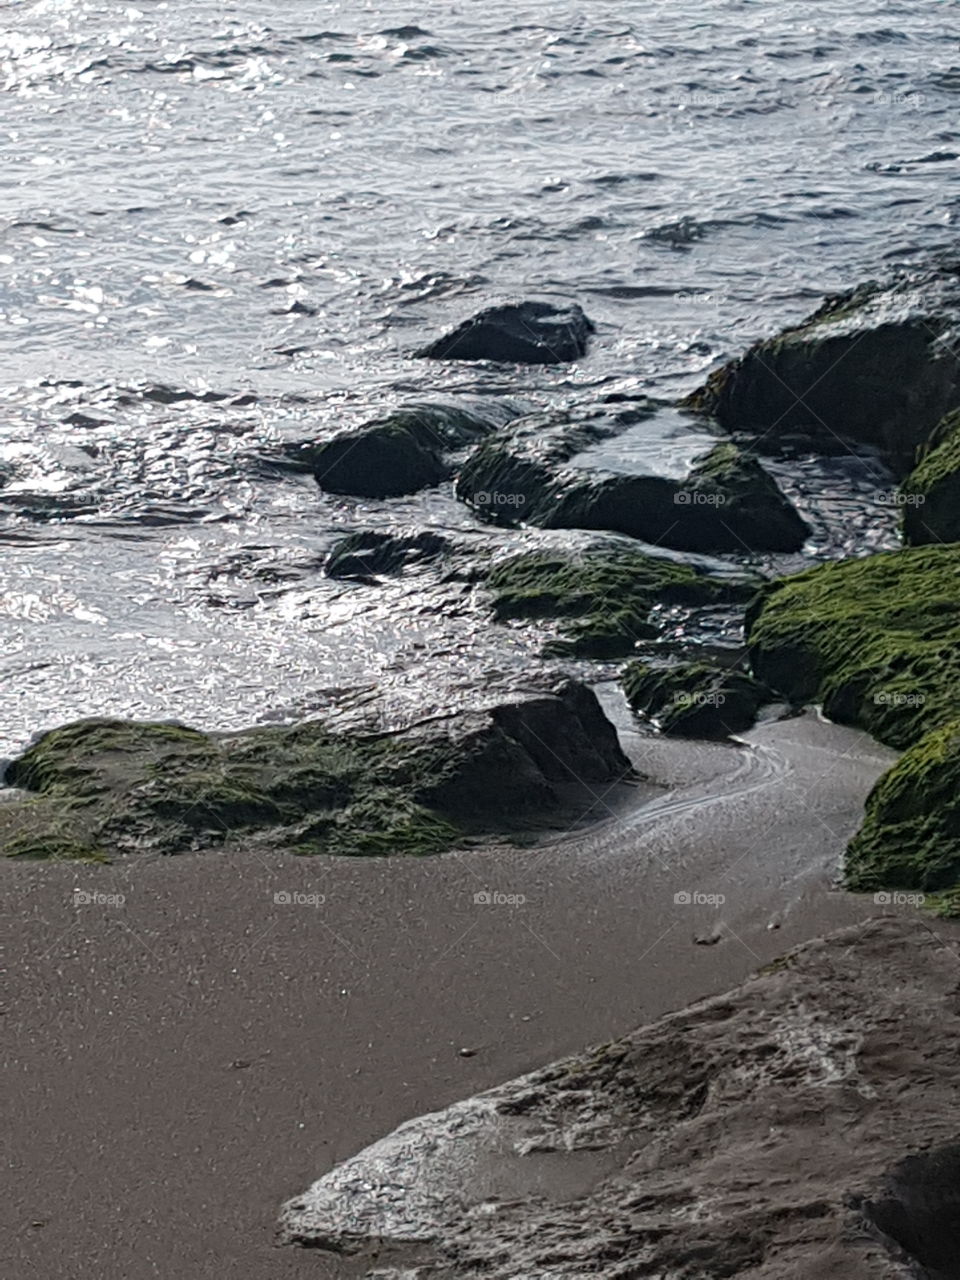 Seashore rocks